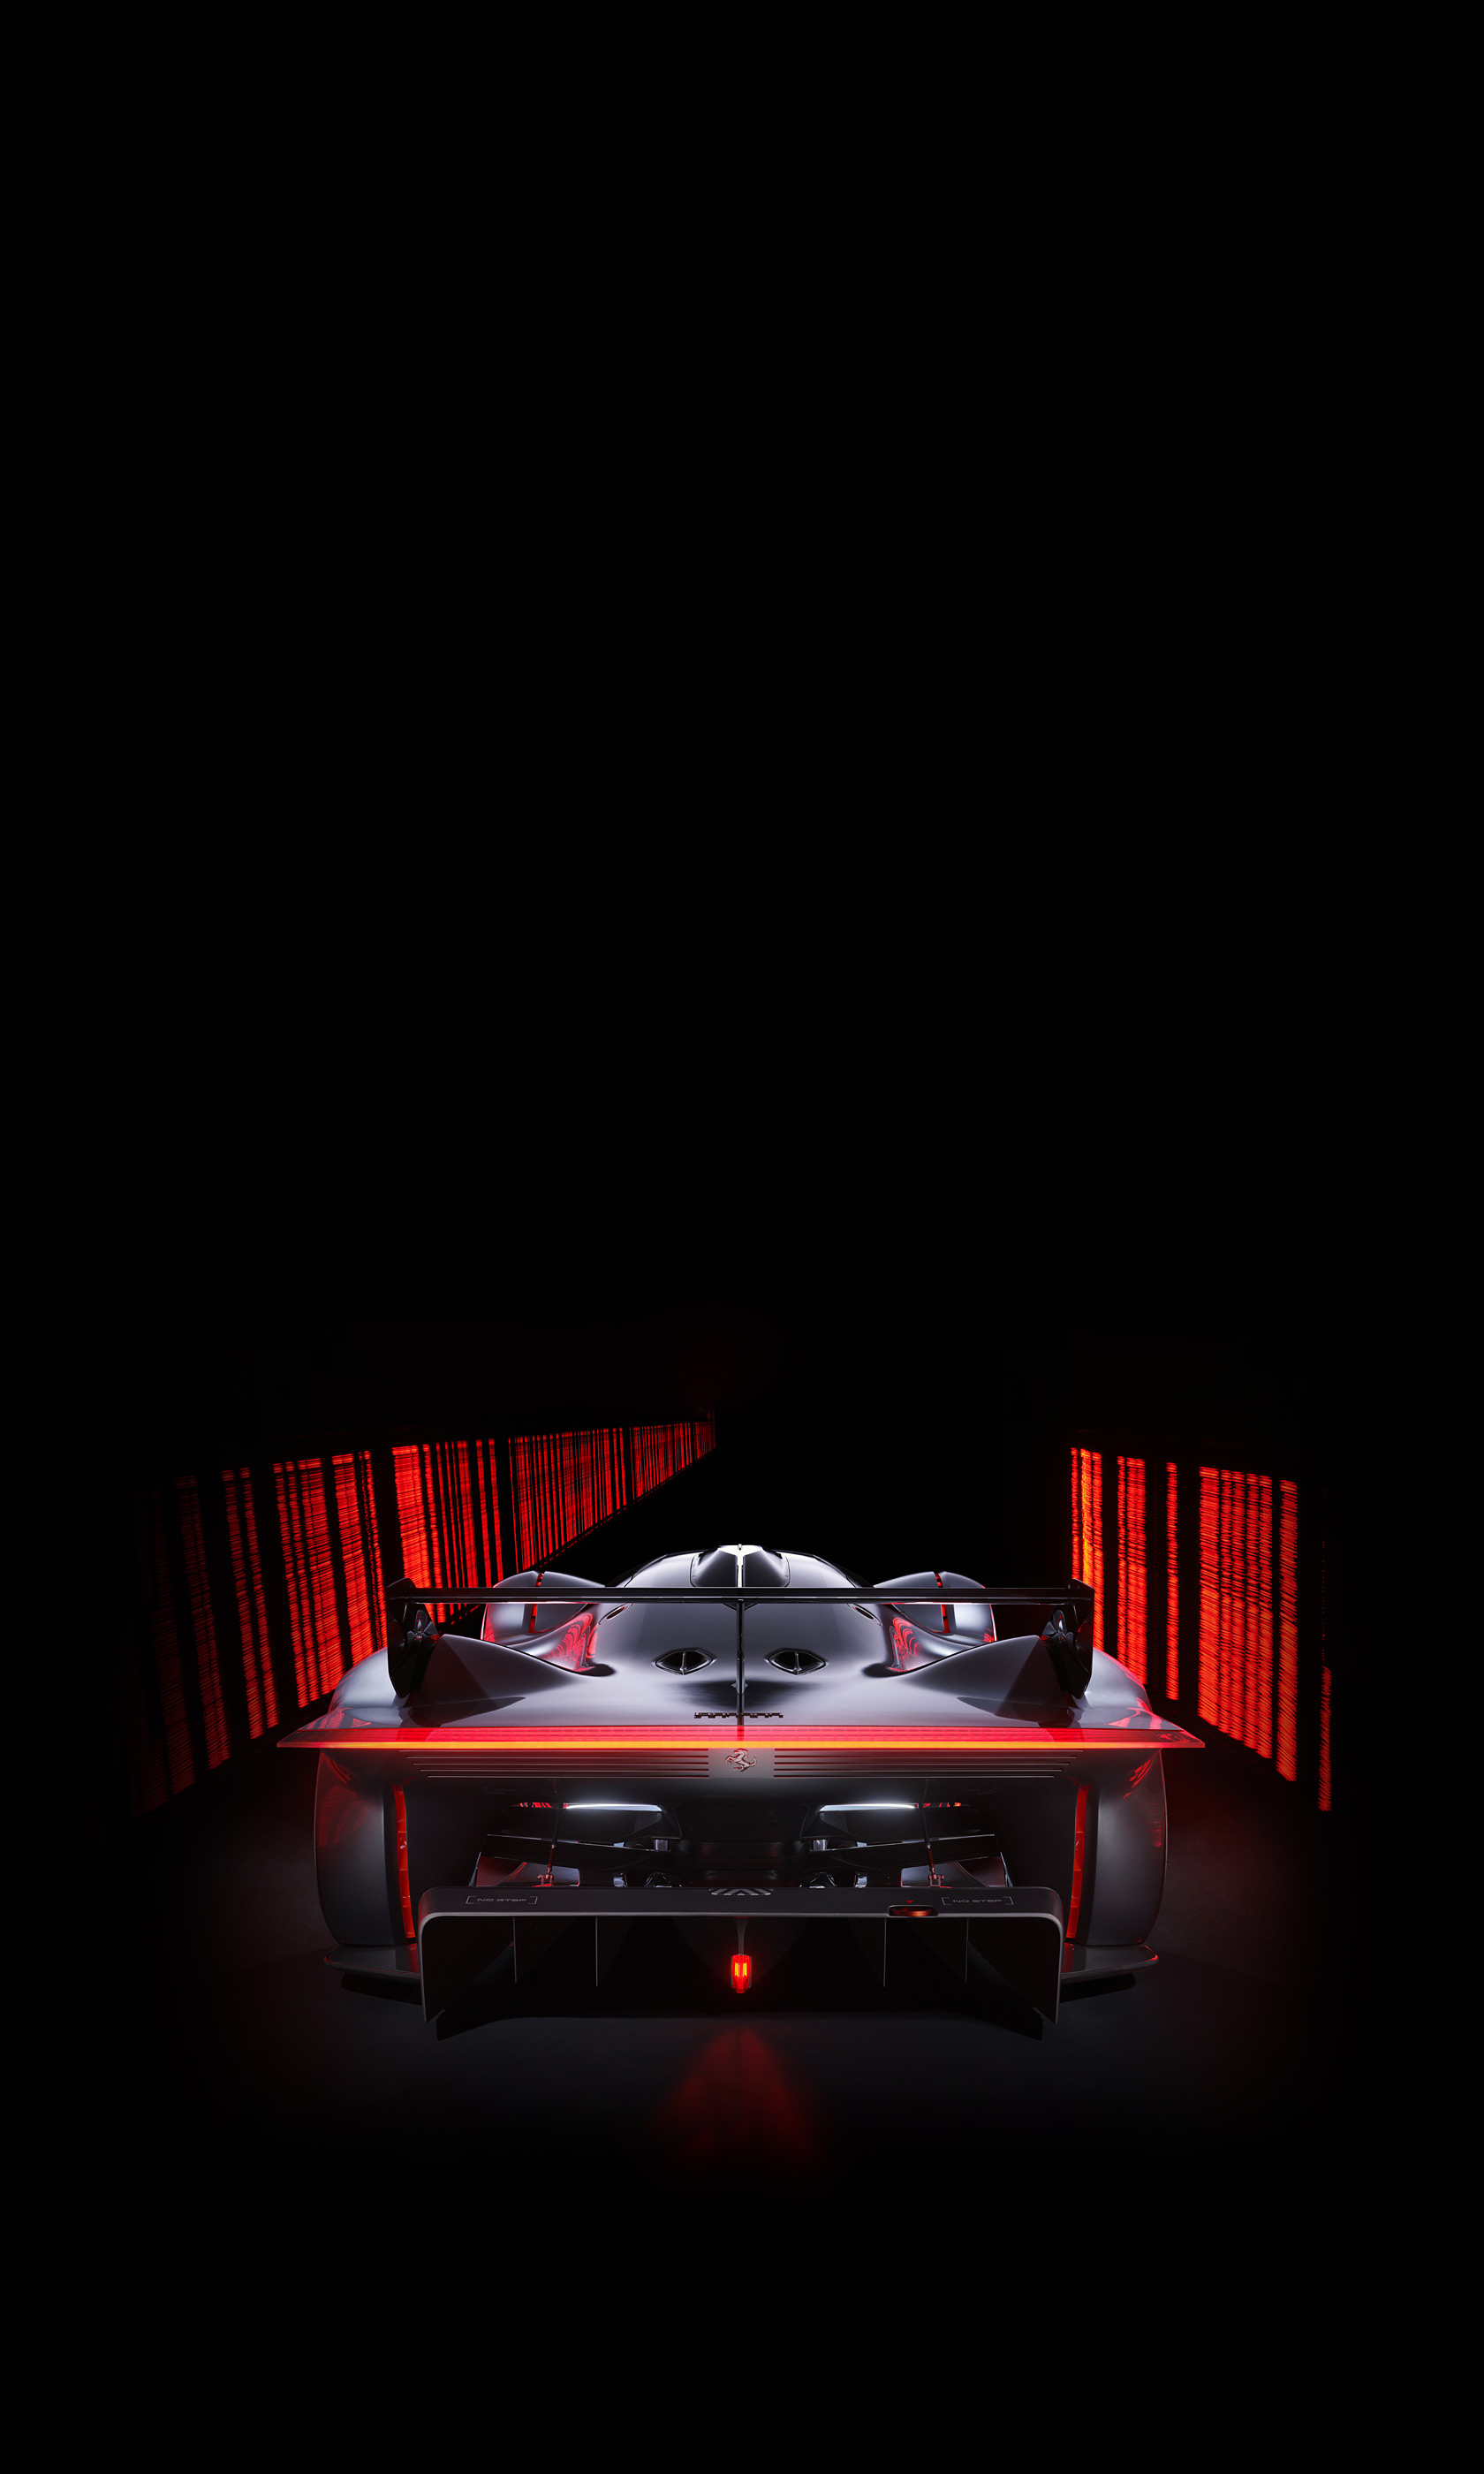  2022 Ferrari Vision Gran Turismo Concept Wallpaper.